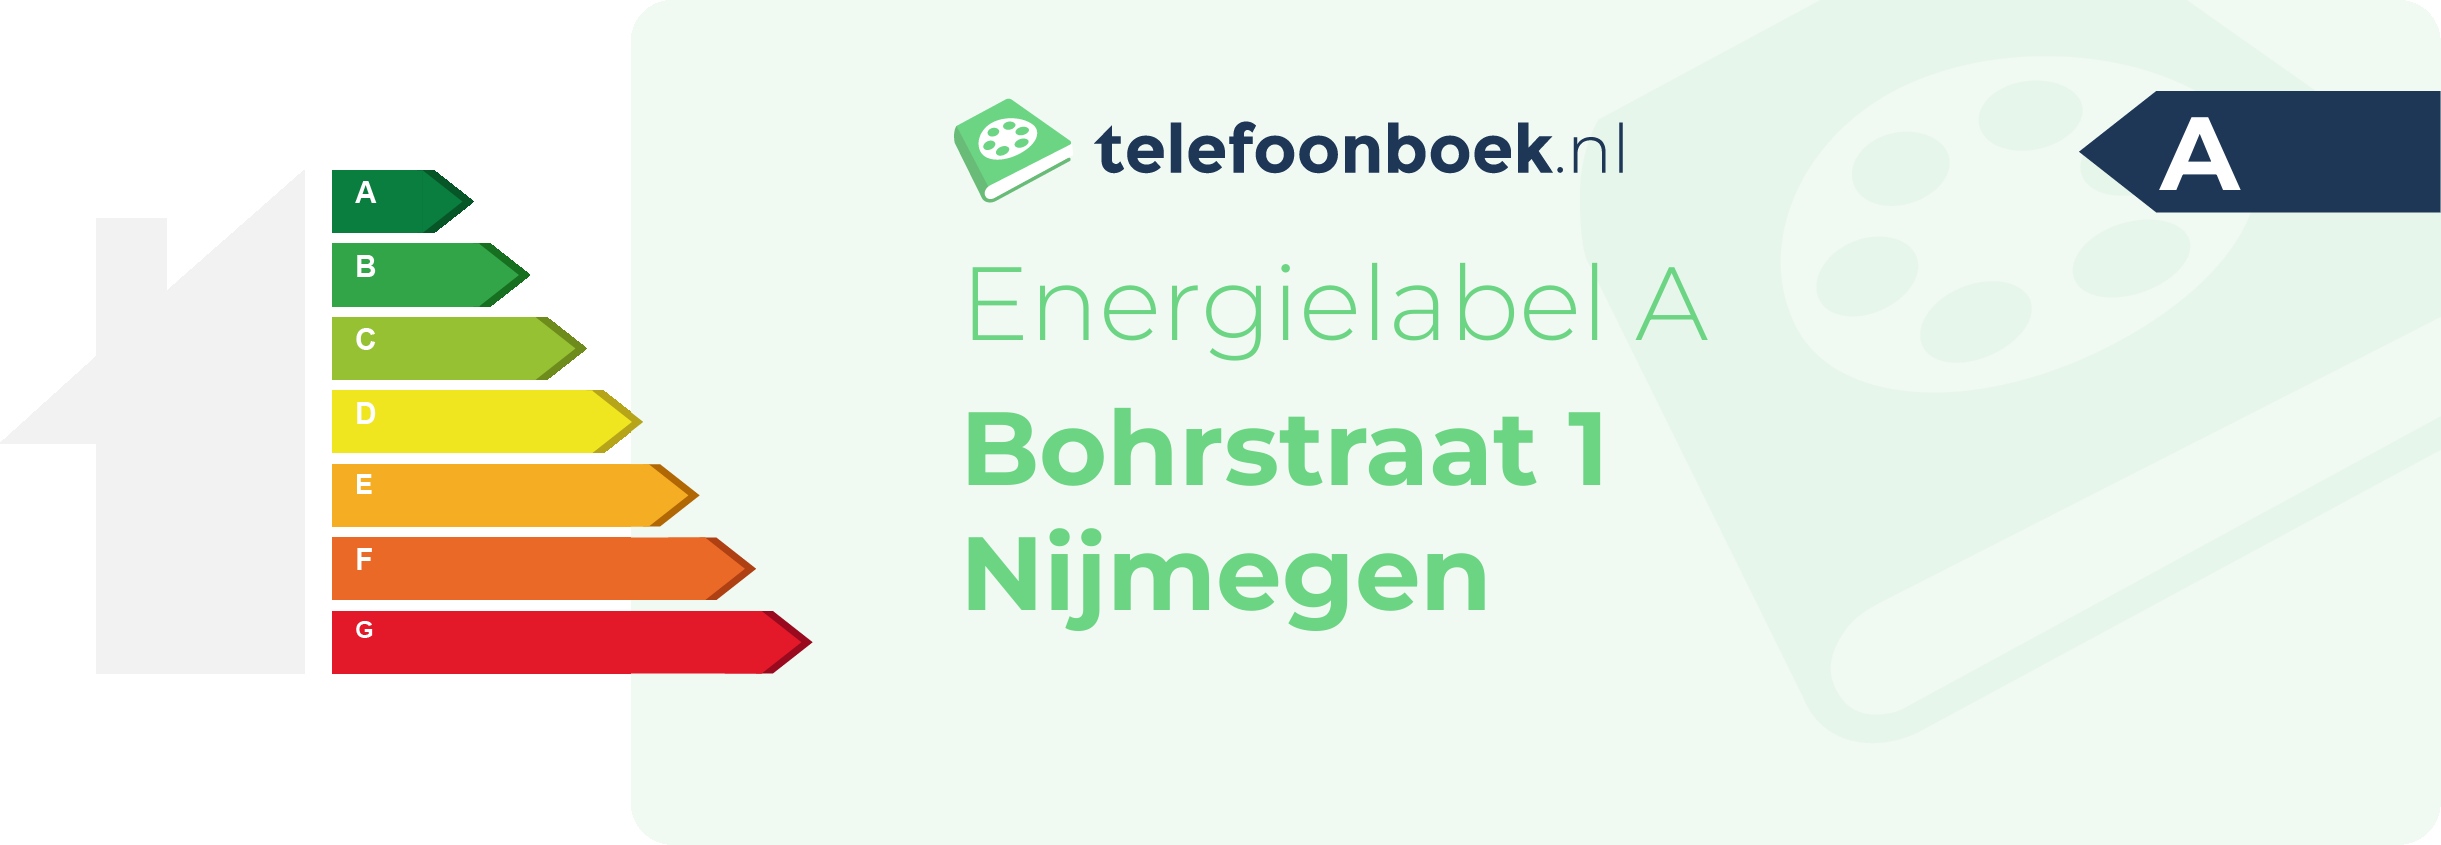 Energielabel Bohrstraat 1 Nijmegen